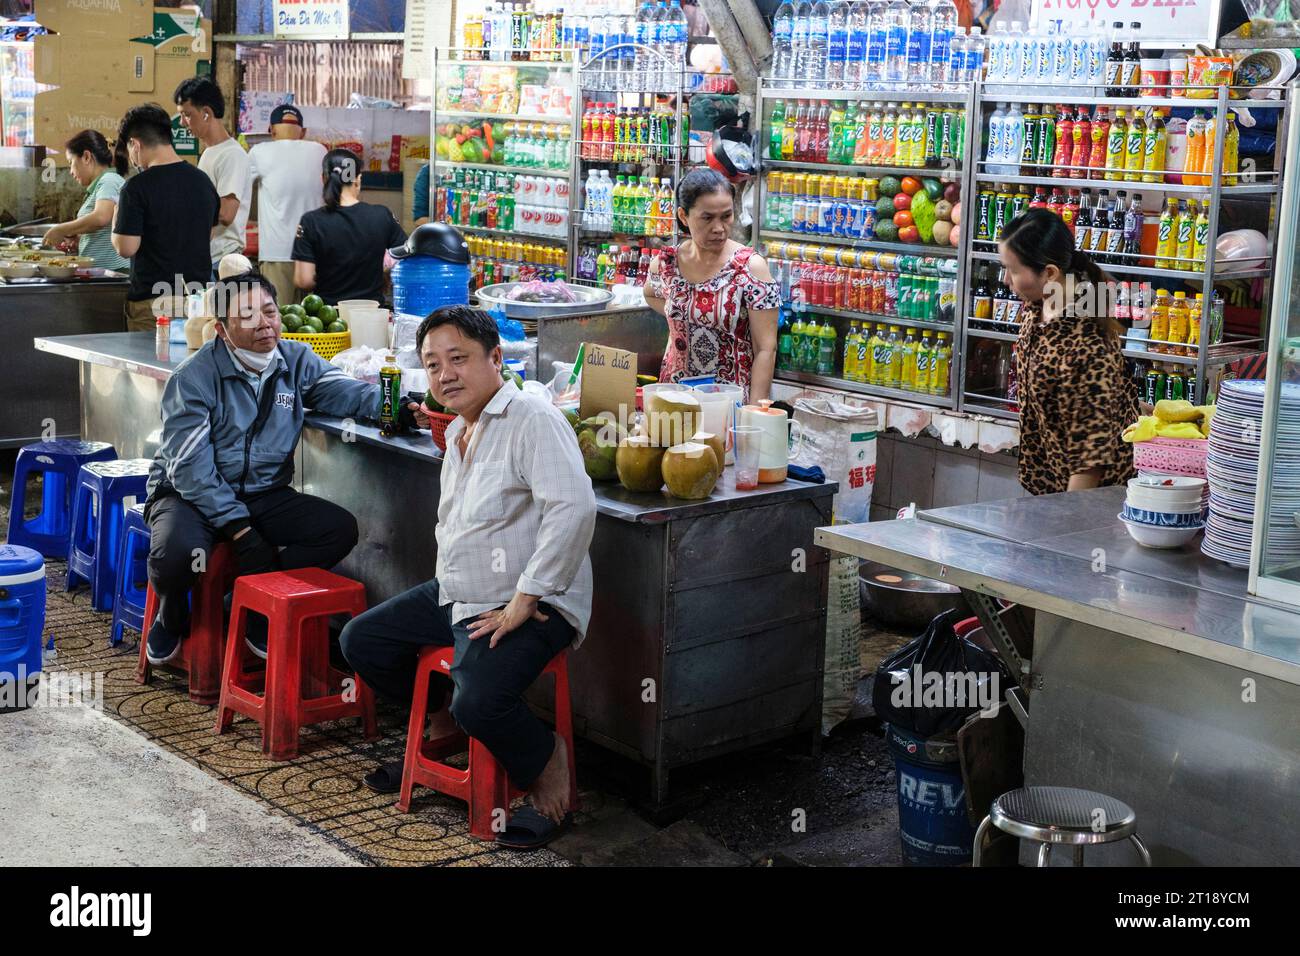 Scène du marché de Binh Tay, Ho Chi Minh-ville, Vietnam. Clients au comptoir des boissons. Banque D'Images